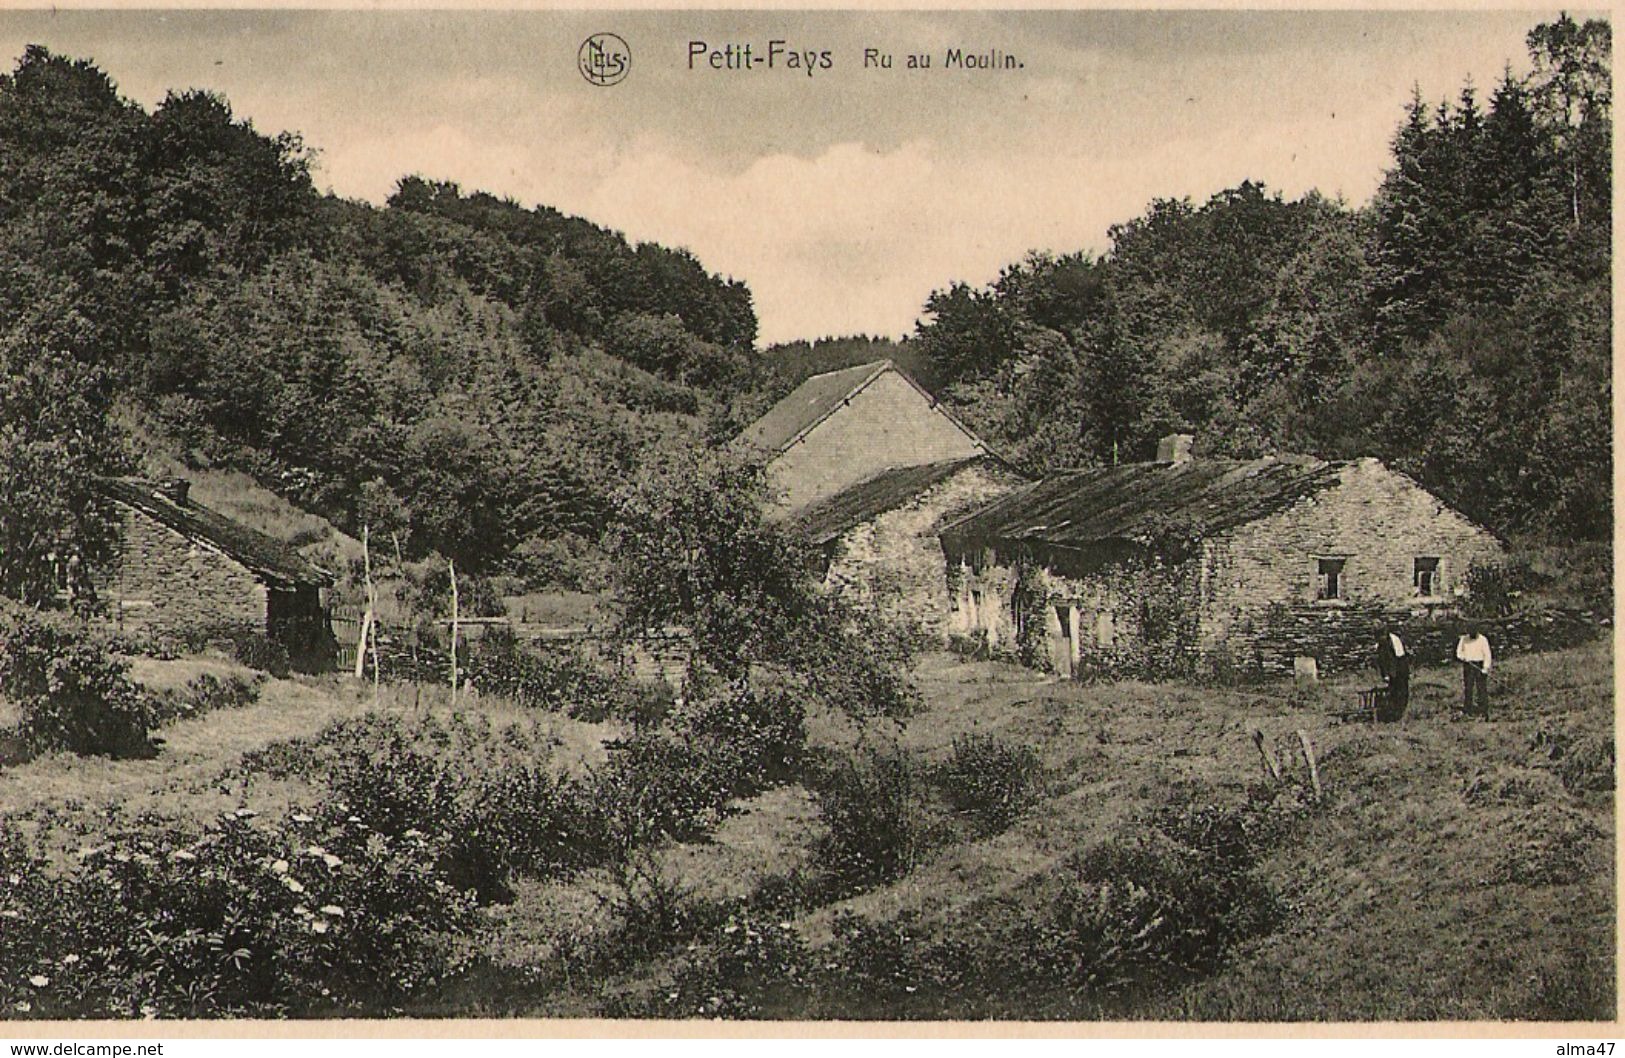 Petit-Fays - Monceau - Ru Au Moulin Animé - Circulé 1954 - Edit. Hôtel De La Vallée J. Robinet Grandjean - Bievre